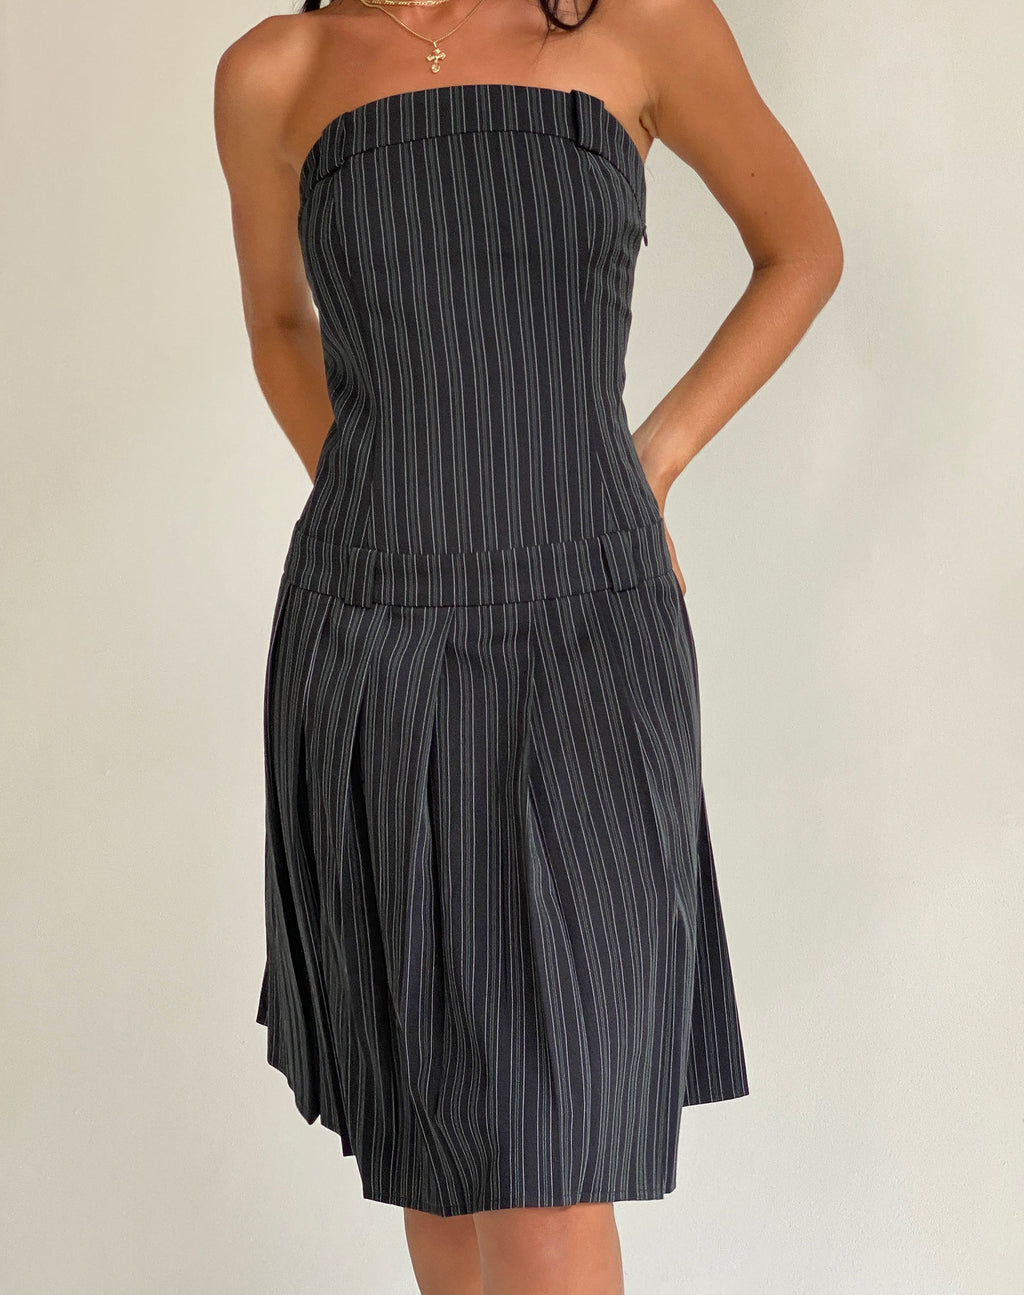 Aldari Bandeau Midi Dress in Tailoring Black Pinstripe